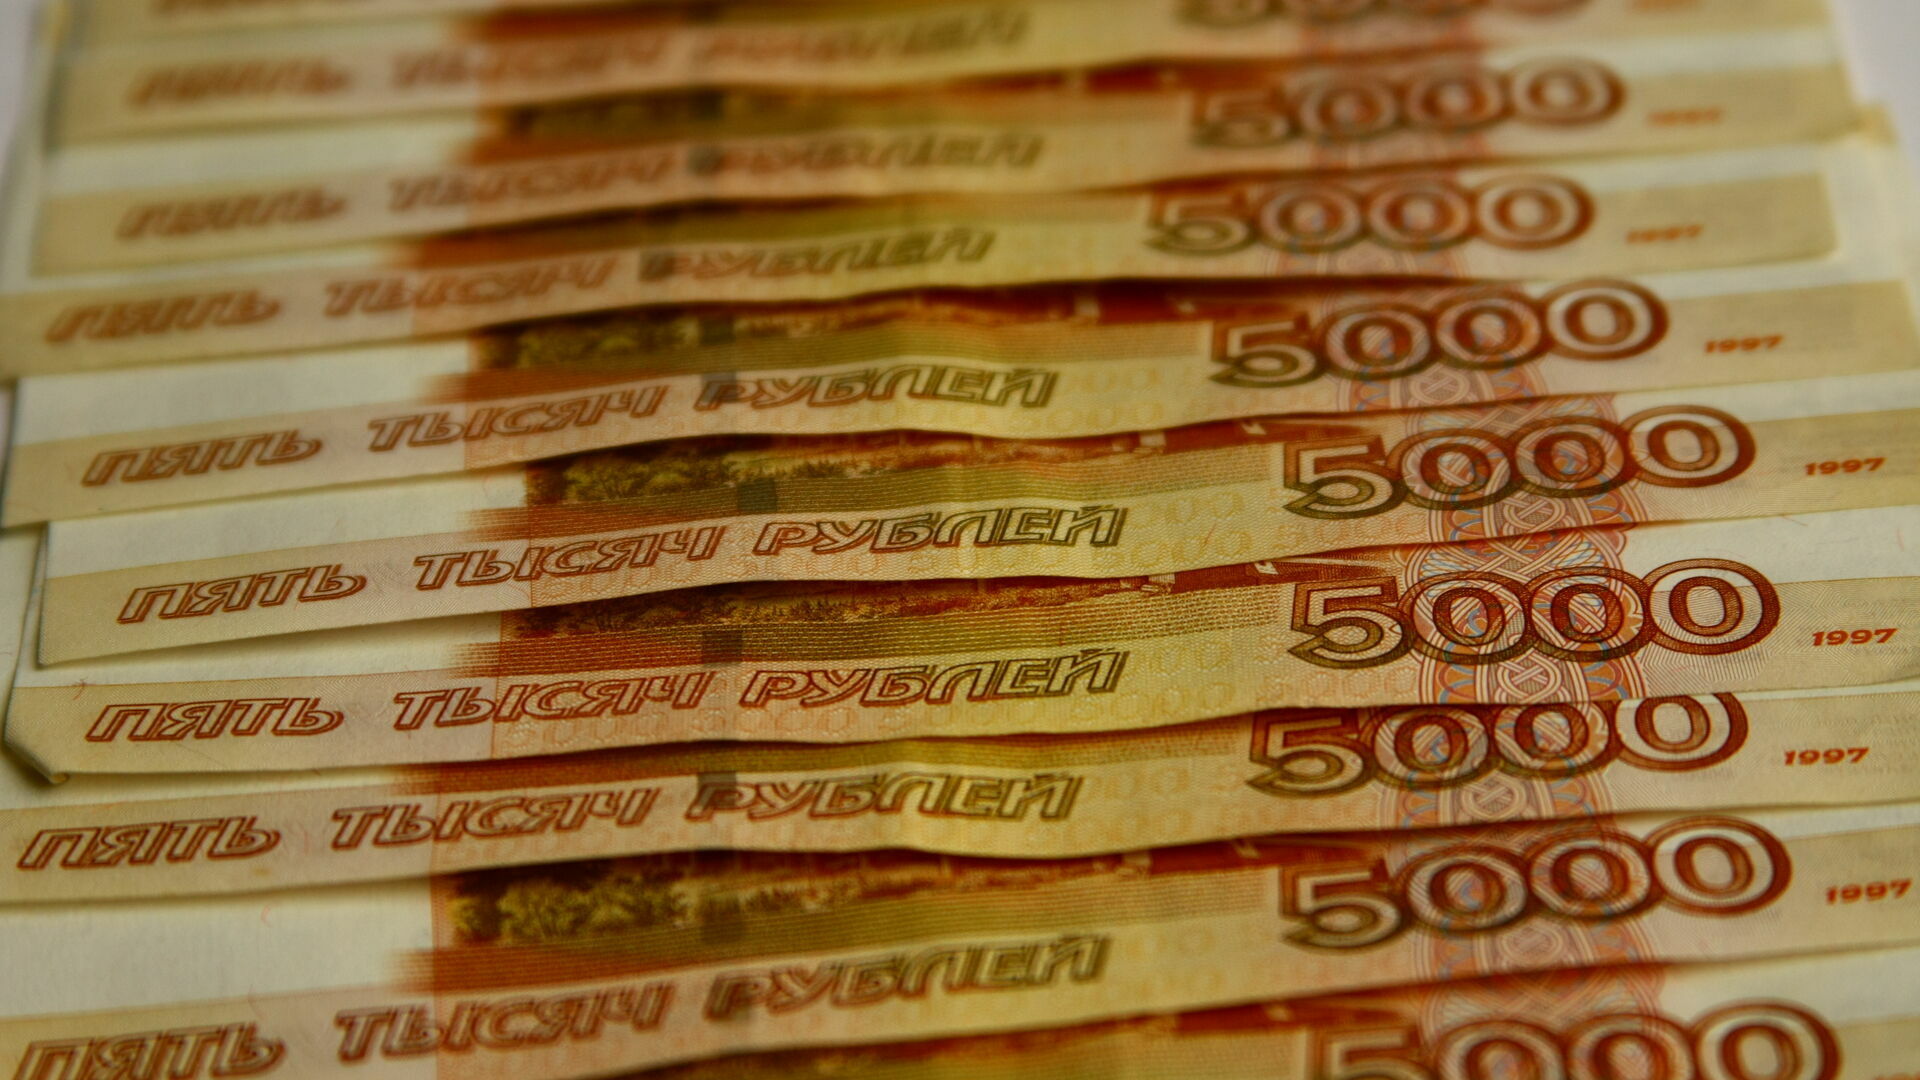 В Чердыни руководители компании подделали документы и похитили почти полмиллиона рублей